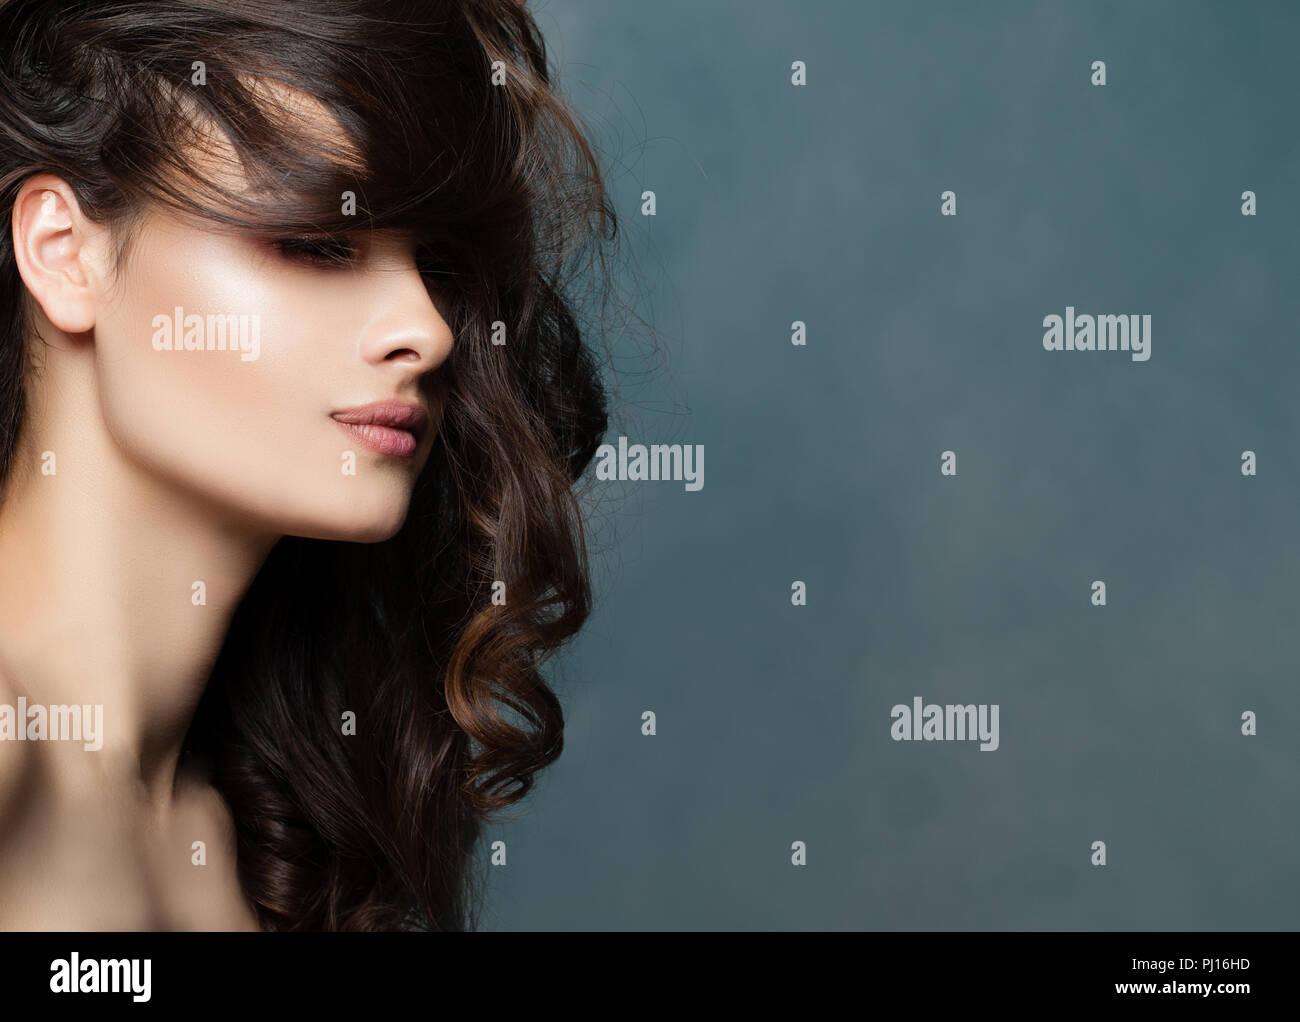 Bellezza viso femminile, profilo. Modello femminile brunette con acconciature ondulate sullo sfondo con spazio di copia Foto Stock